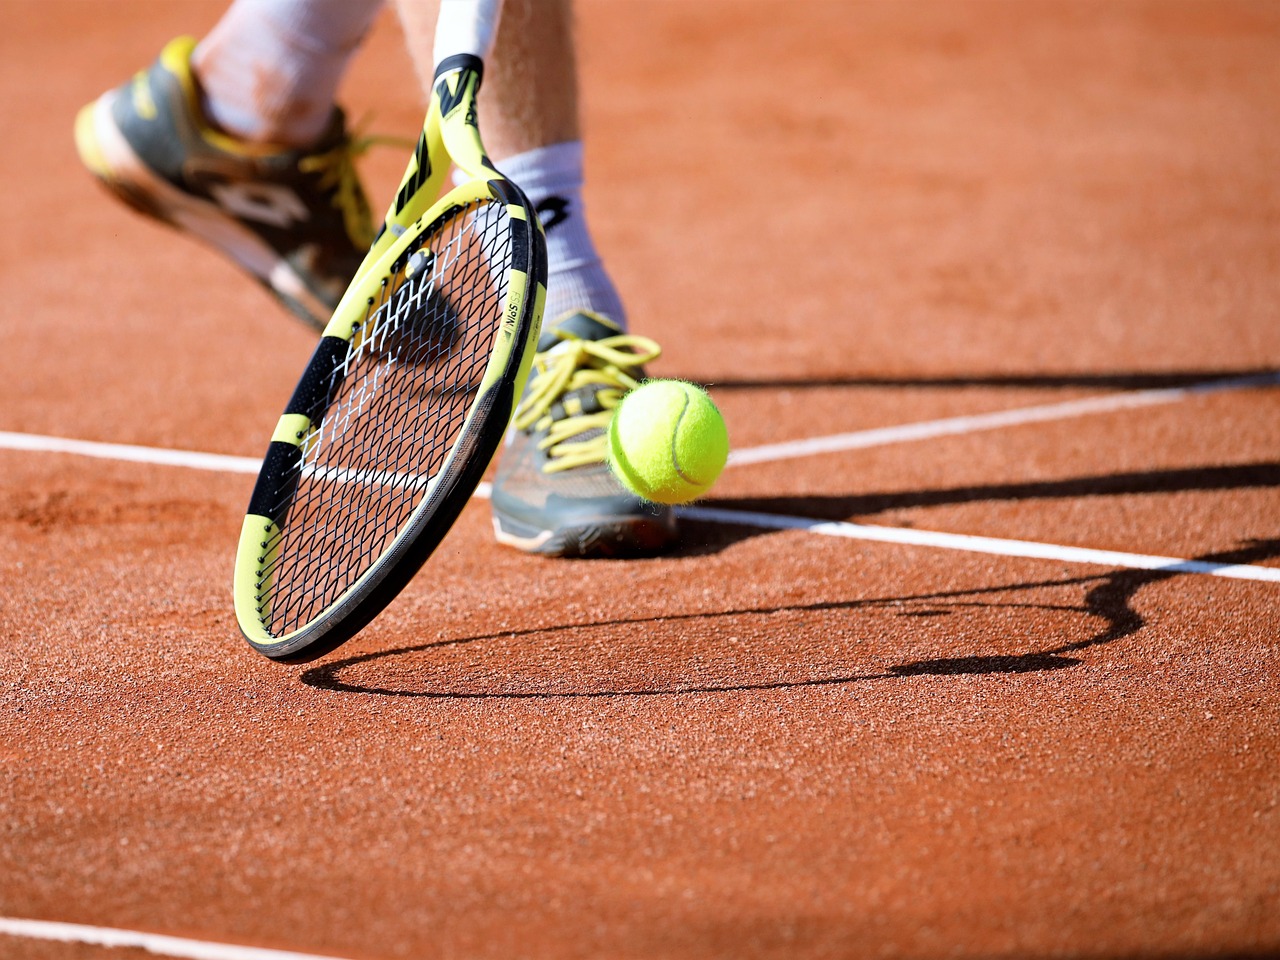 Cuáles son los beneficios de jugar tenis? - Cajas de Chile